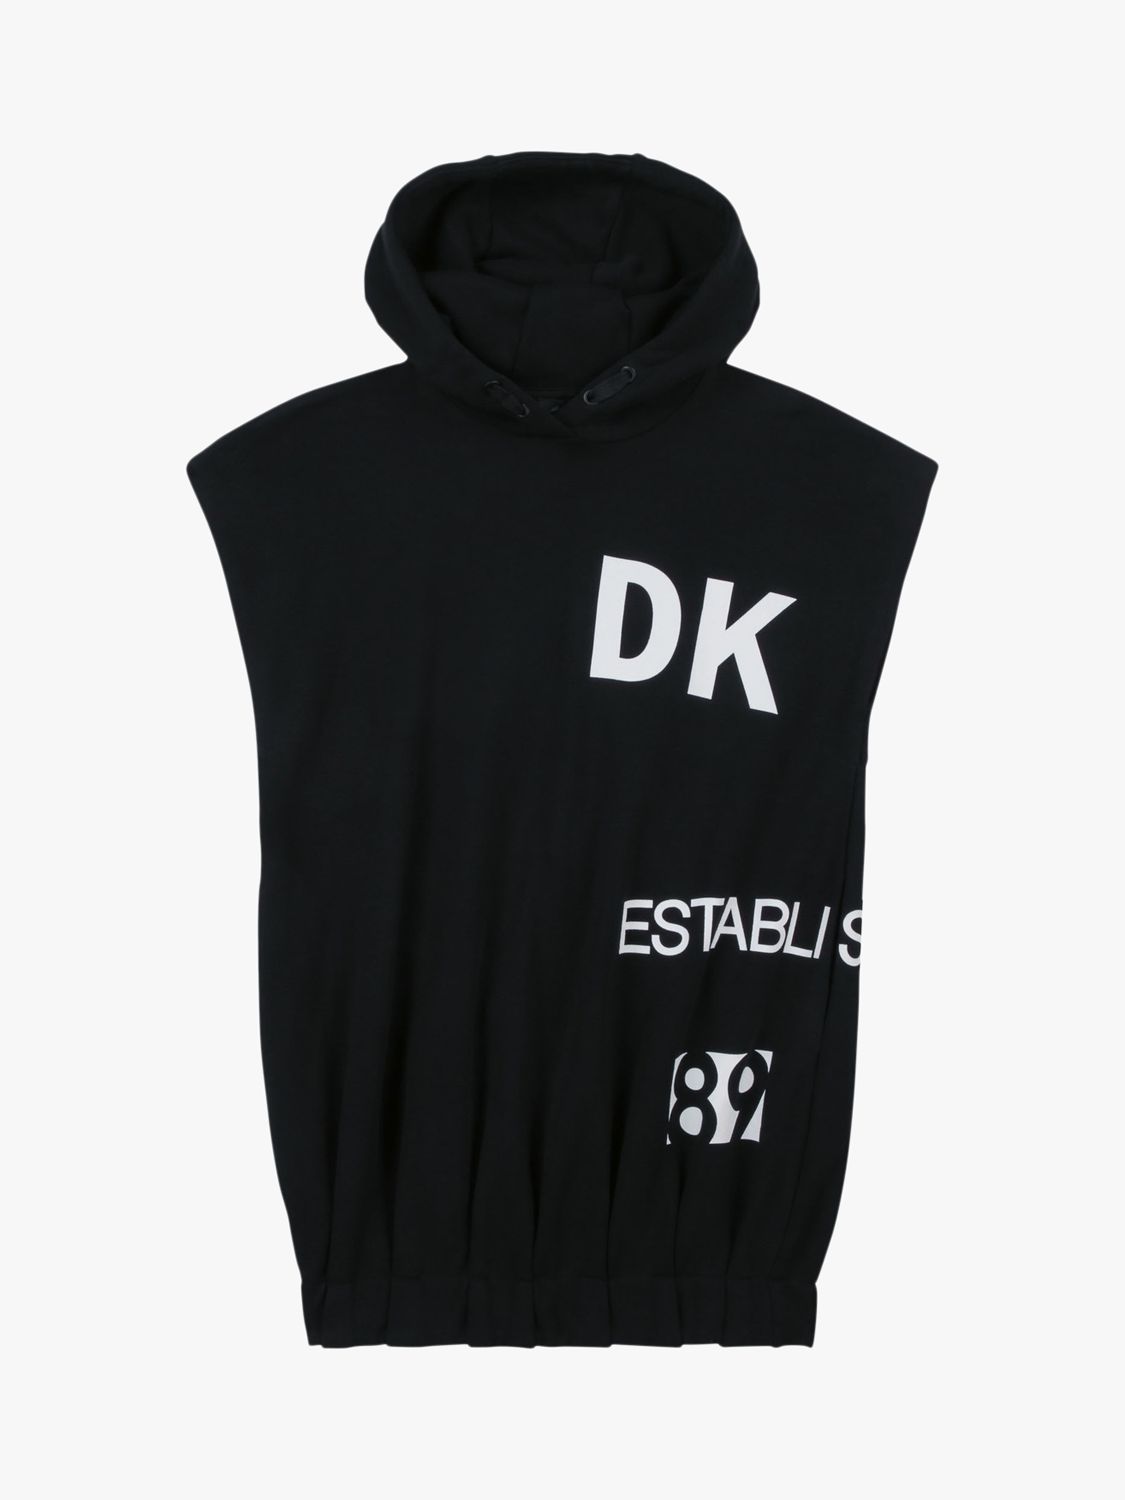 DKNY Kids' Hooded Fleece Dress, Black, 4 years